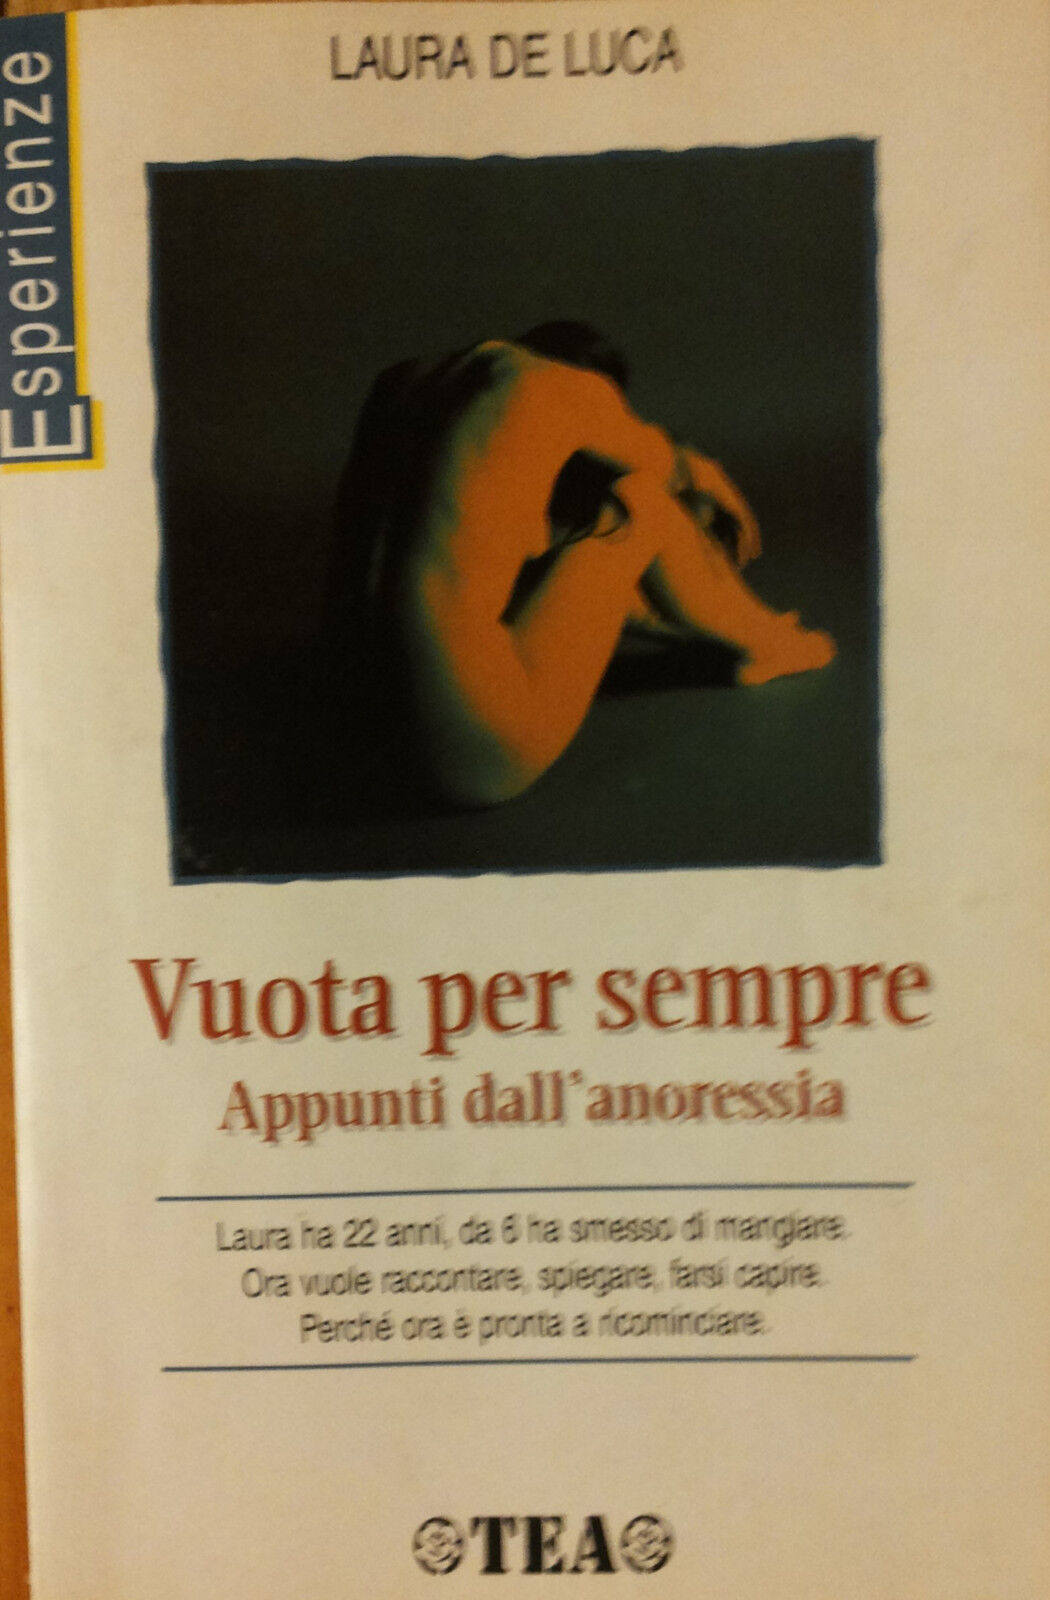 Vuota per sempre appunti dalL'anoressia - De Luca - TEA,1998 - R libro usato